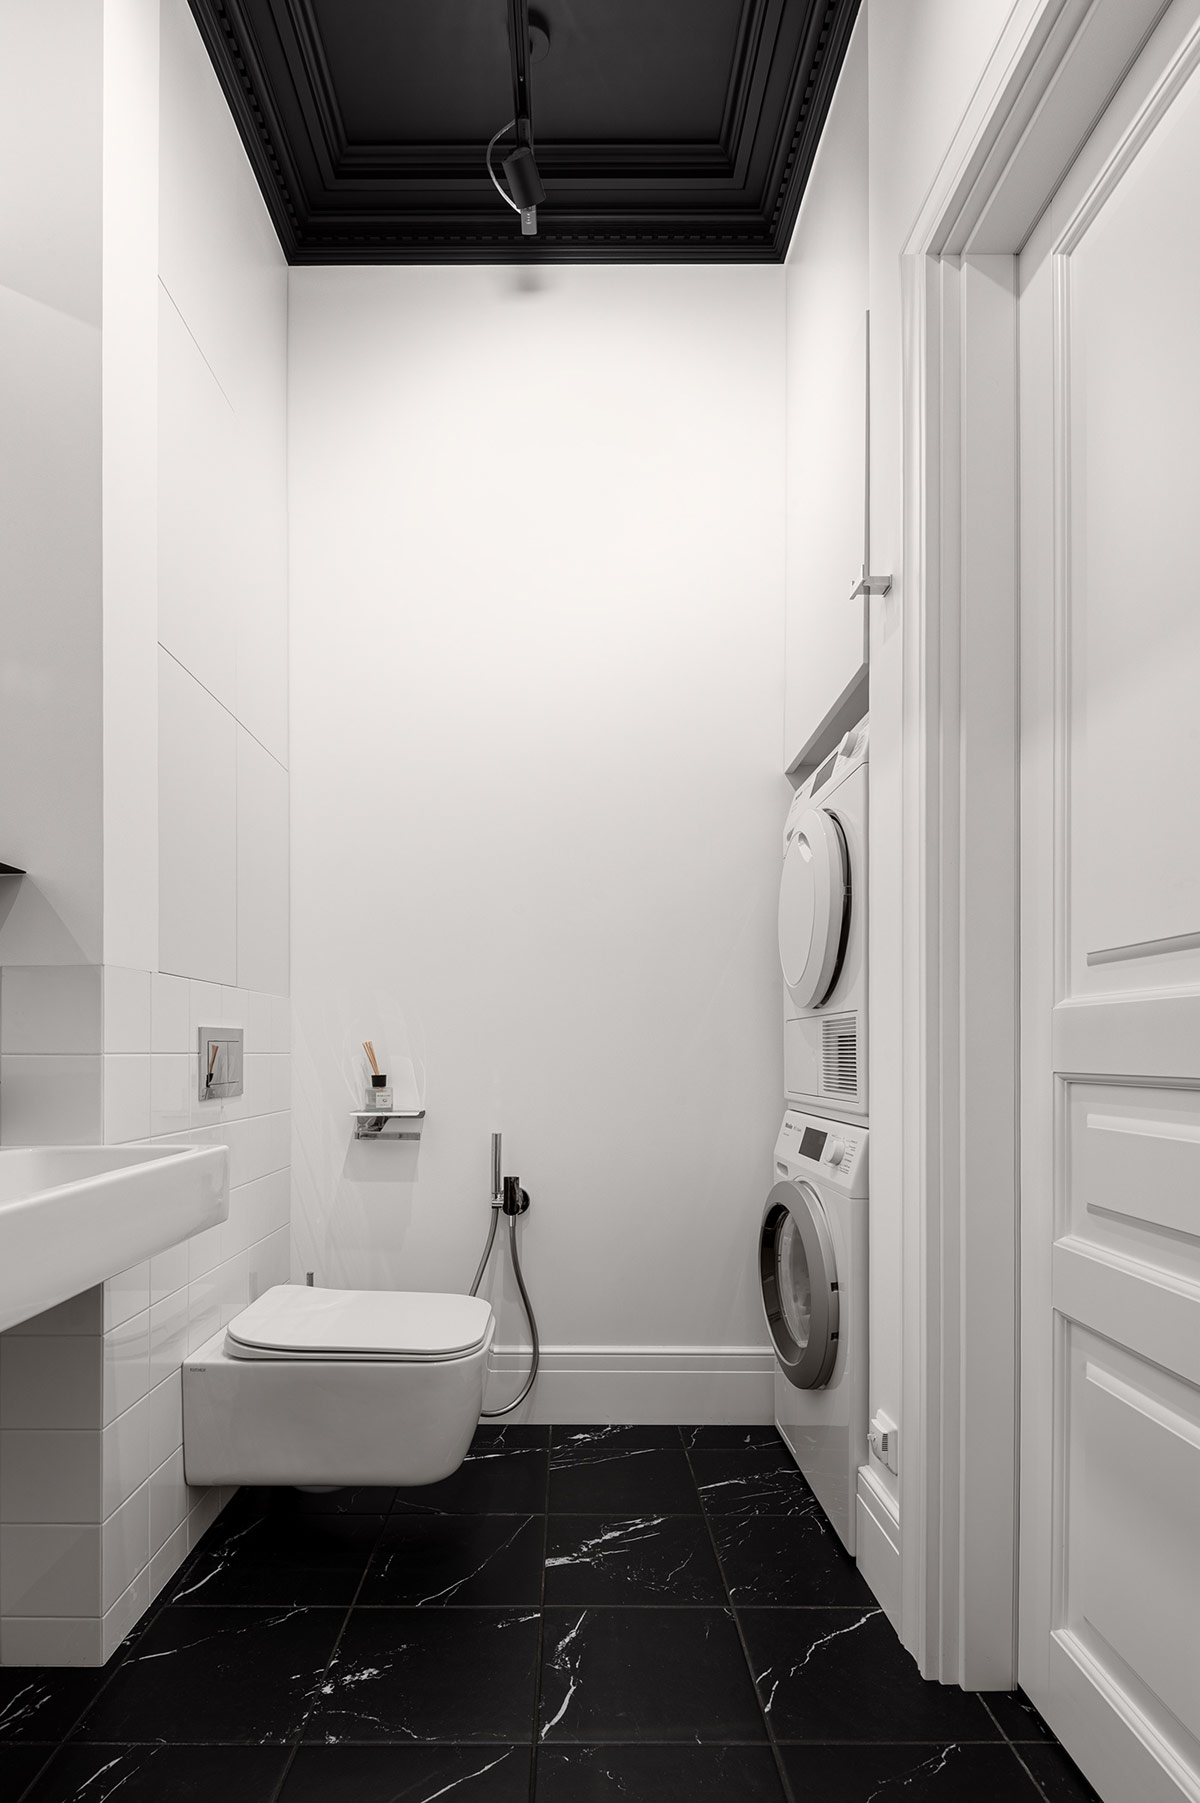 Phòng tắm của căn hộ tuy nhỏ nhưng cực kỳ bắt mắt nhờ cách sử dụng màu sắc đối lập giữa nền tường và nội thất màu trắng với trần và sàn nhà màu đen. Sàn nhà lát đá cẩm thạch, vật liệu sang trọng và đắt giá với những đường vân trắng hài hòa với ý đồ thiết kế.